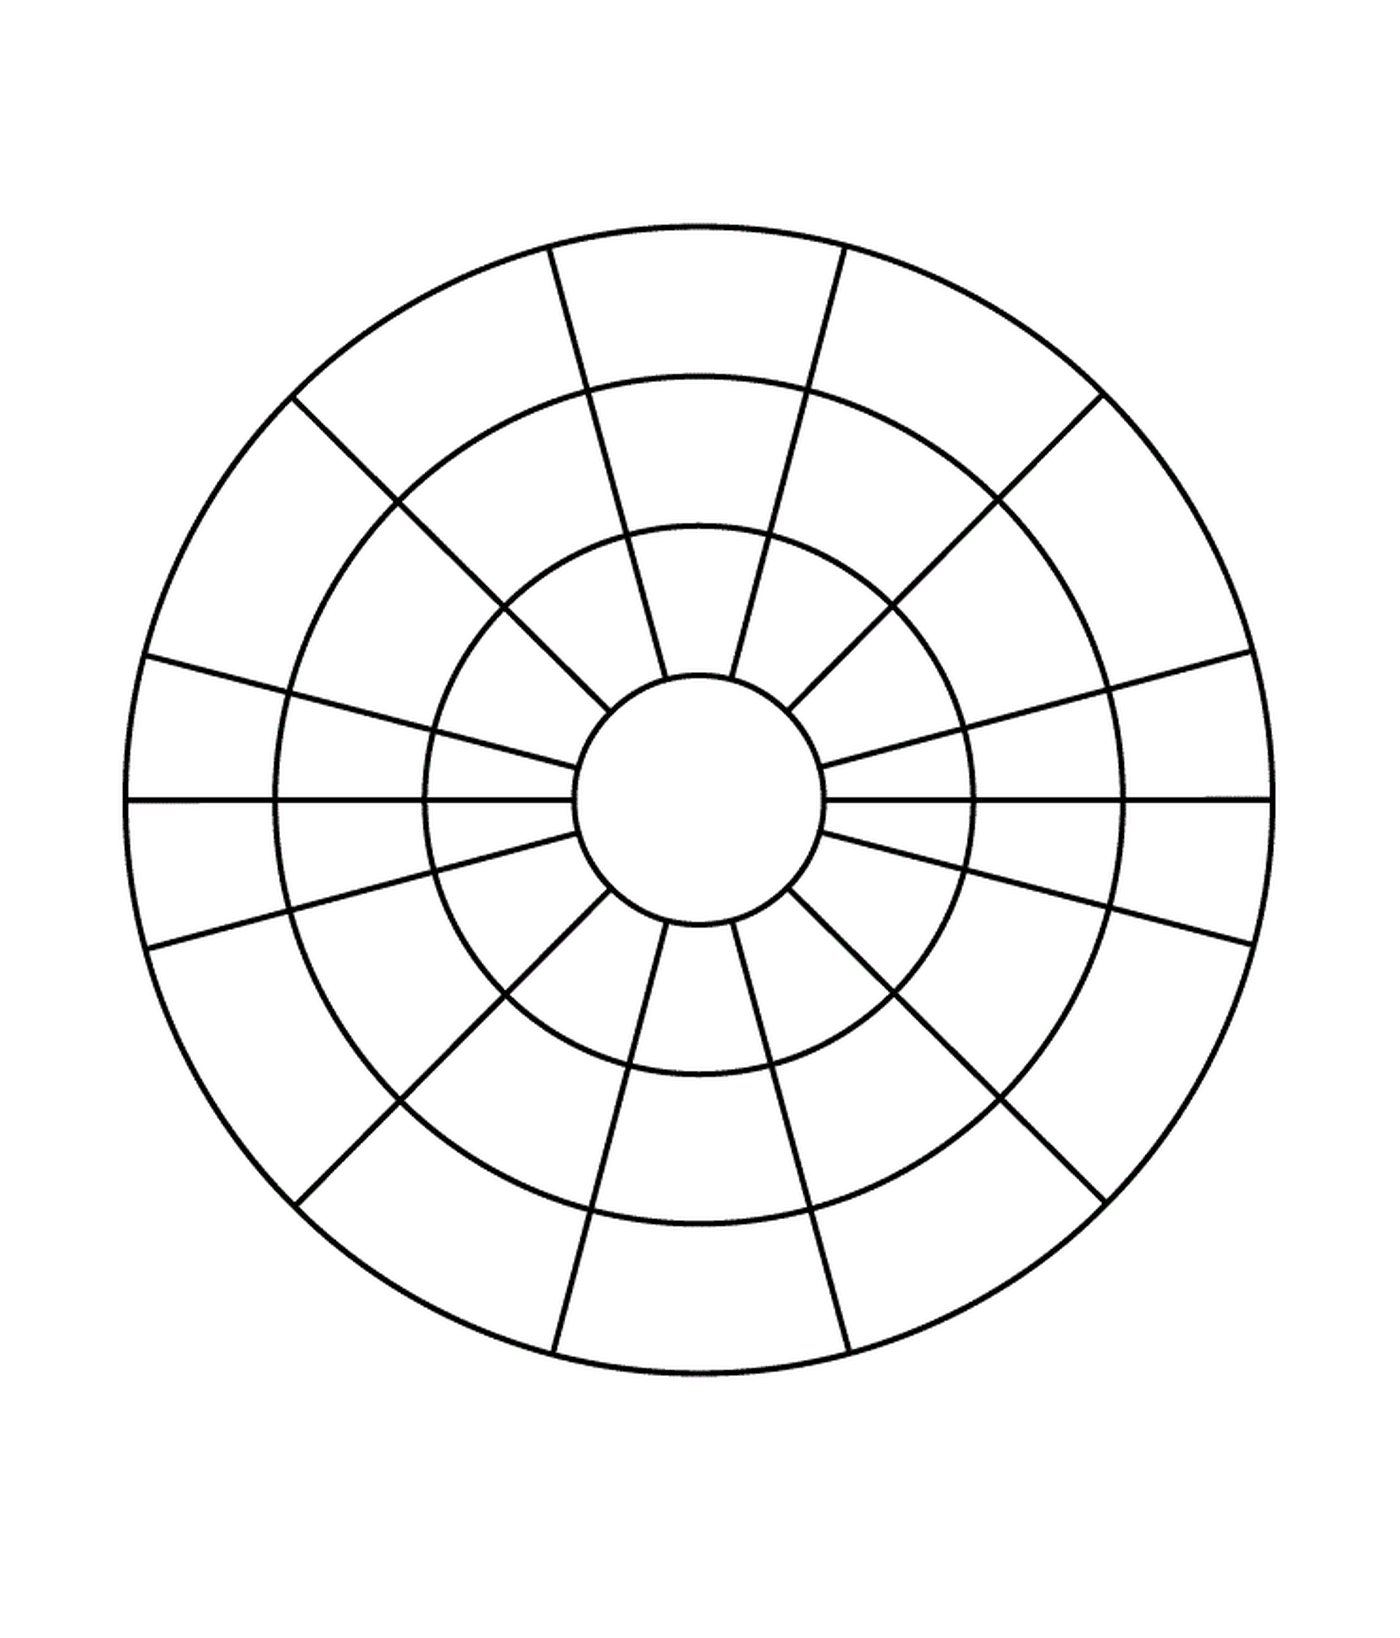  Un cerchio diviso in quattro sezioni 